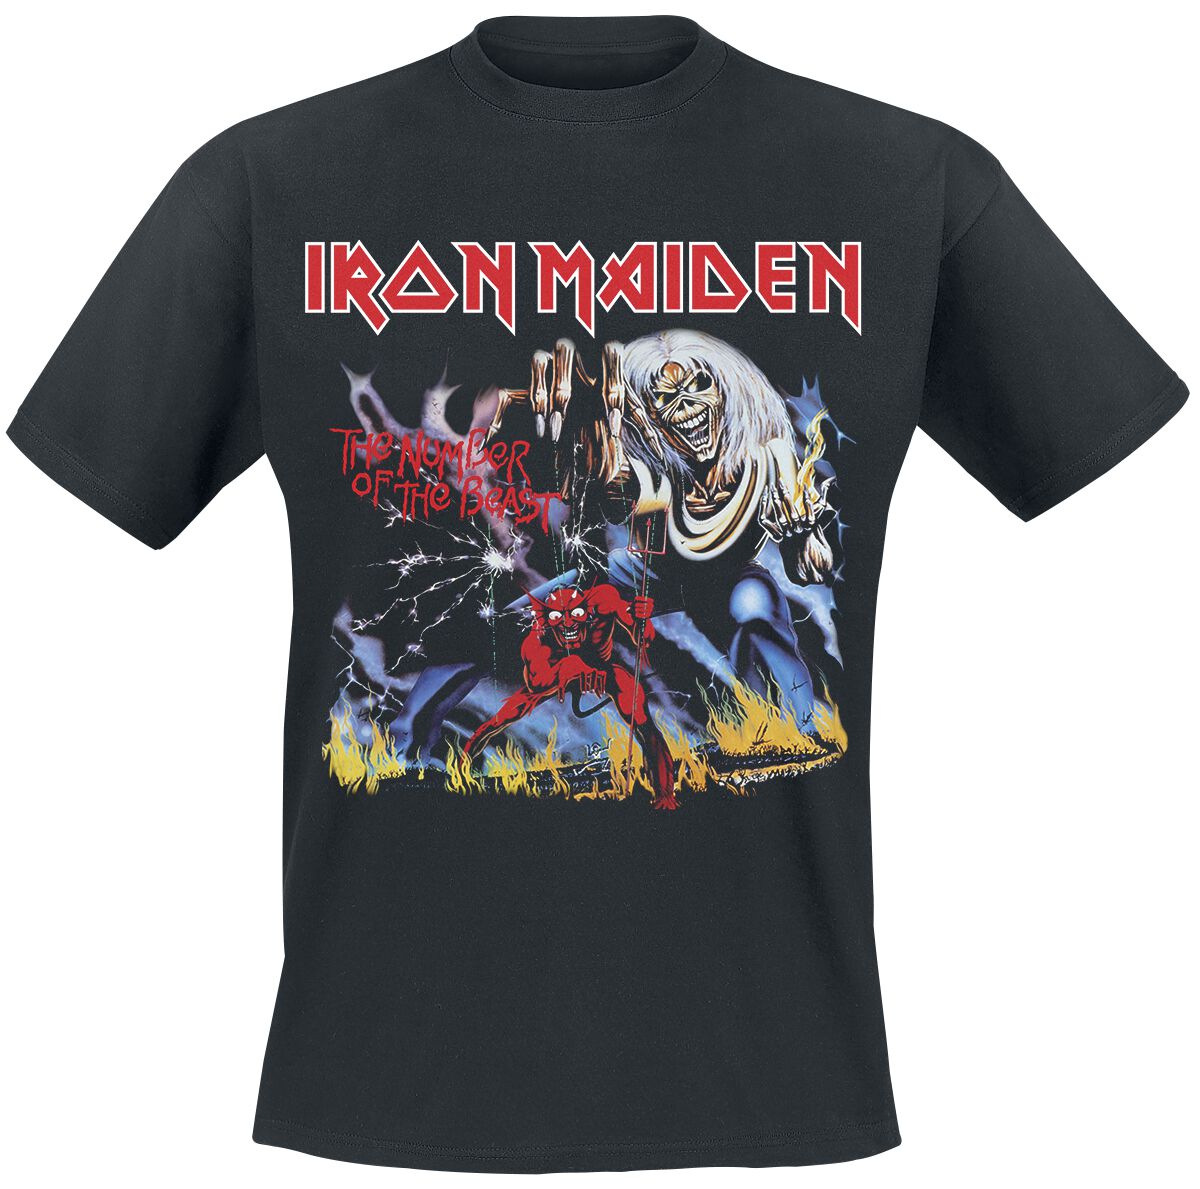 Iron Maiden T-Shirt - Stranger Number Of The Beast - M bis 4XL - für Männer - Größe M - schwarz  - Lizenziertes Merchandise!